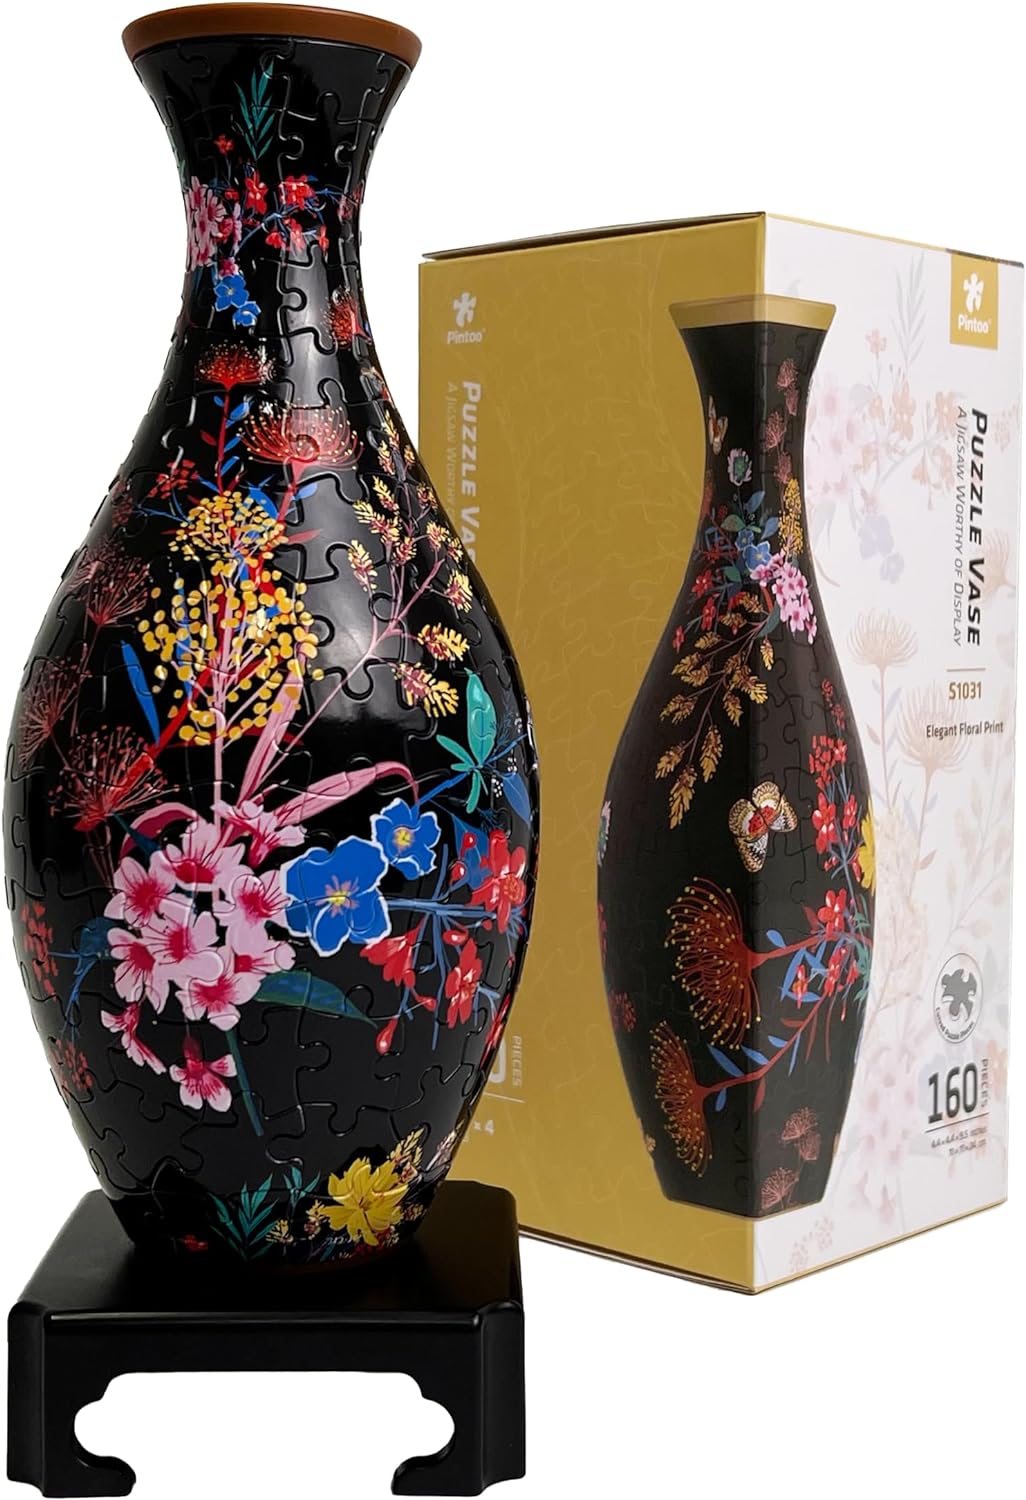 P-Vase: S1031 Elegant Floral P